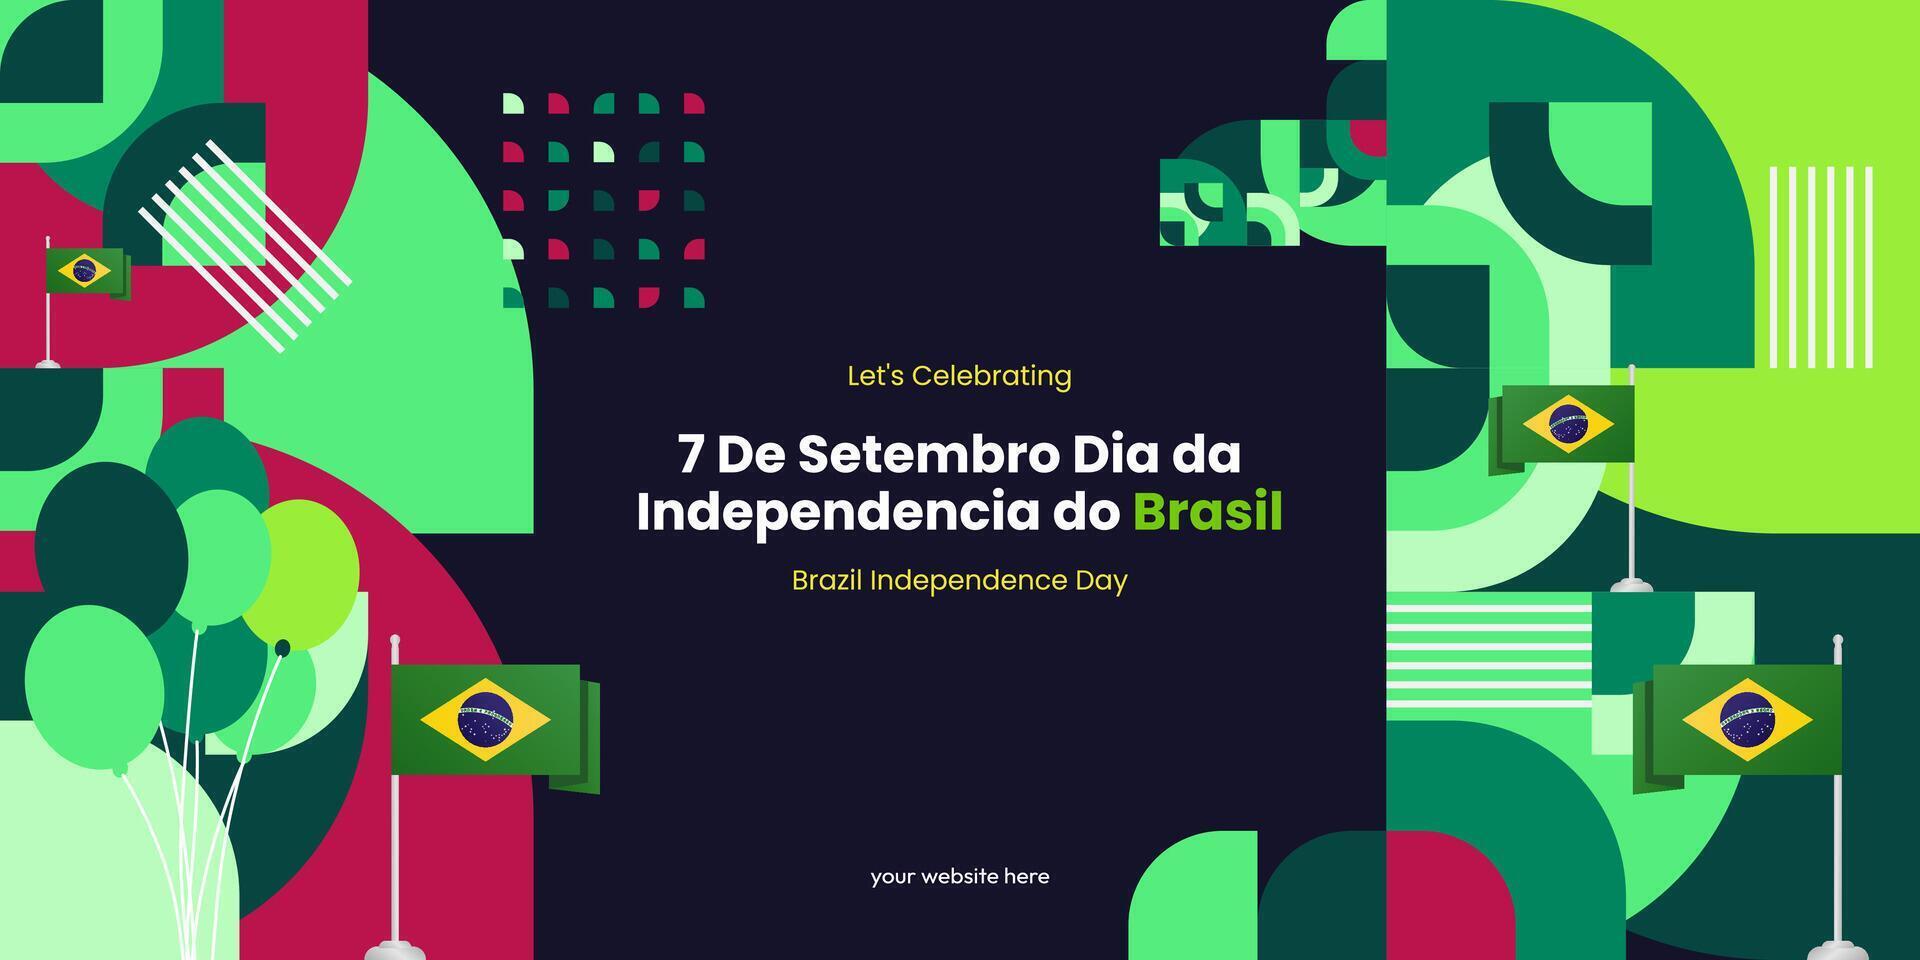 Brasilien Unabhängigkeit Tag Banner im bunt modern geometrisch Stil. National Unabhängigkeit Tag Gruß Karte Startseite mit Typografie. Vektor Illustration zum National Urlaub Feier Party